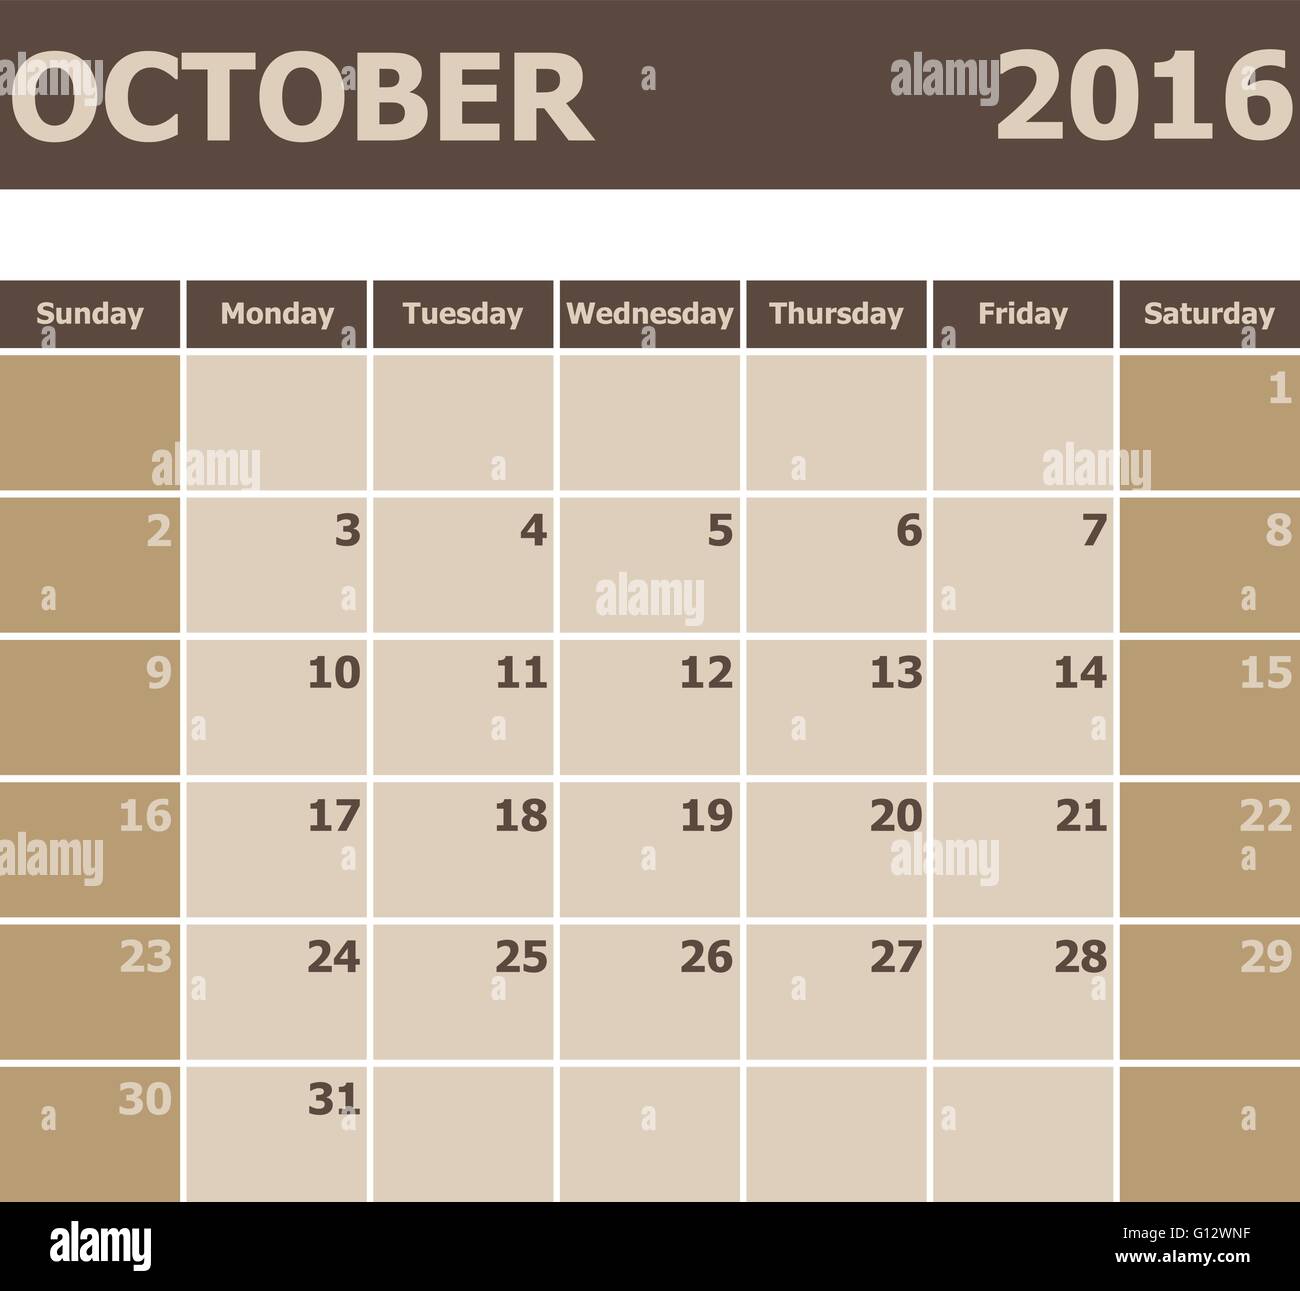 Kalender Oktober 2016, Woche ab Sonntag, Lager Vektor Stock Vektor